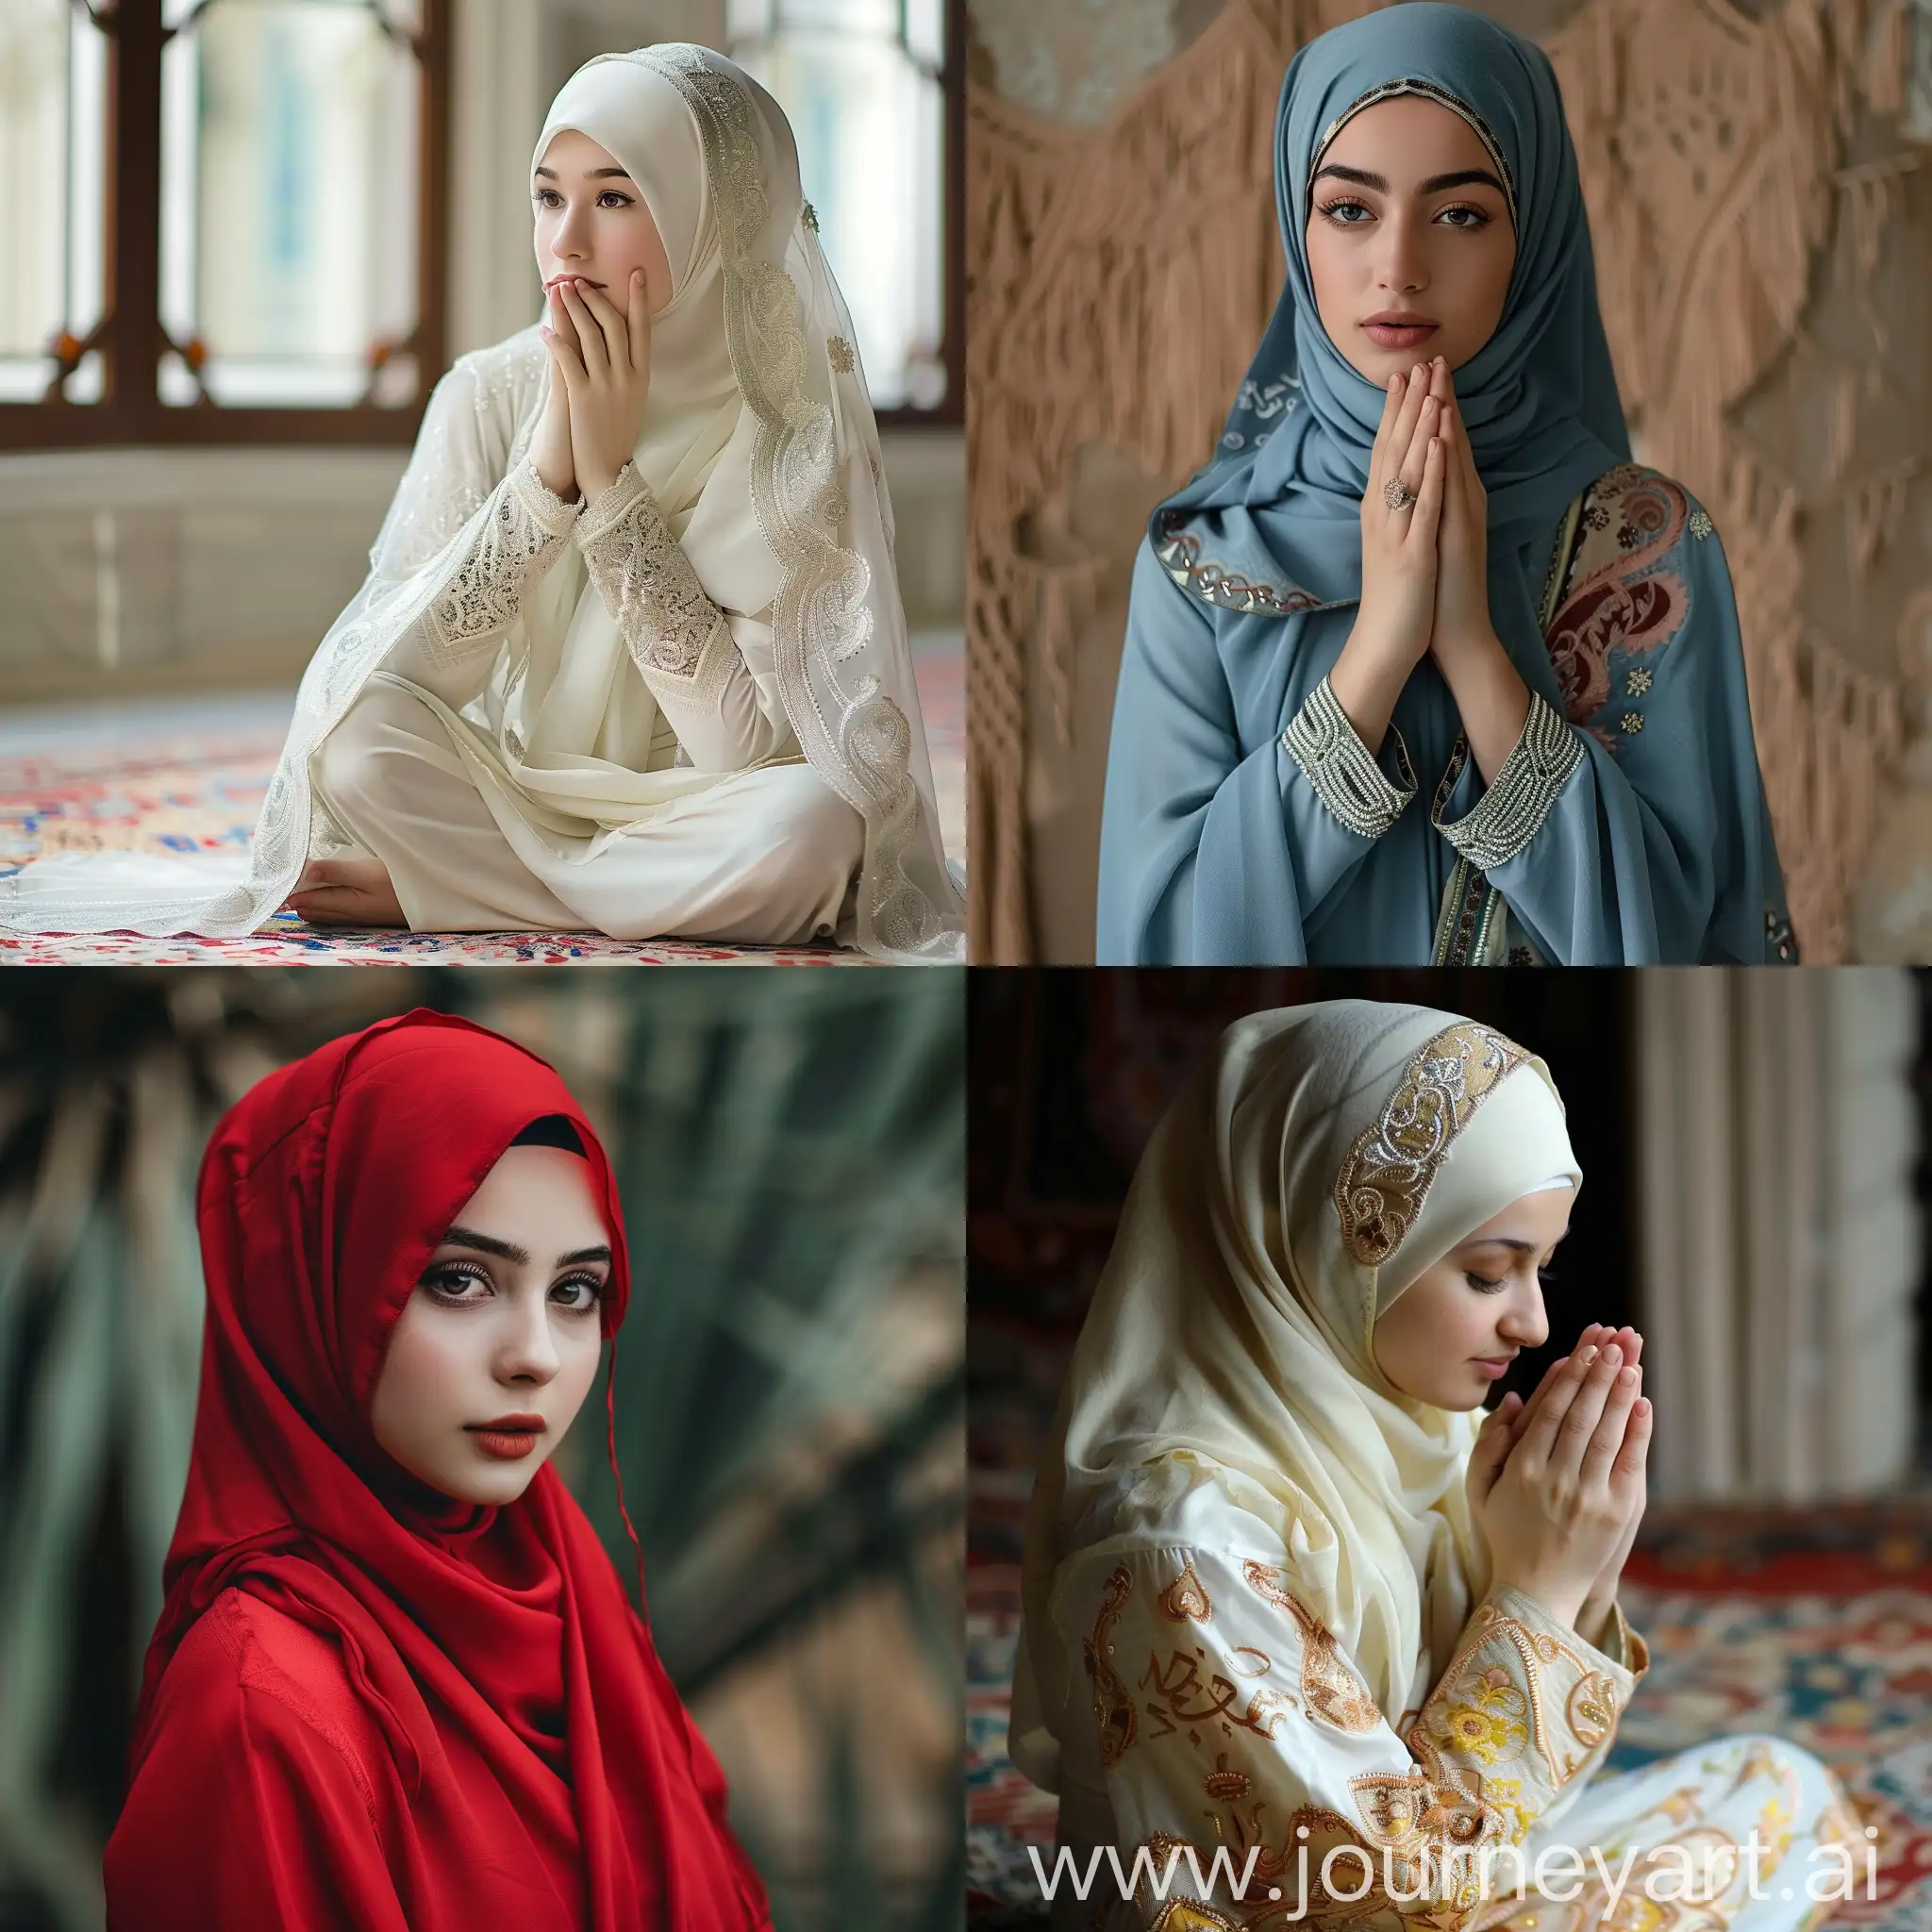 Traditional-Muslim-Woman-in-Vibrant-Attire